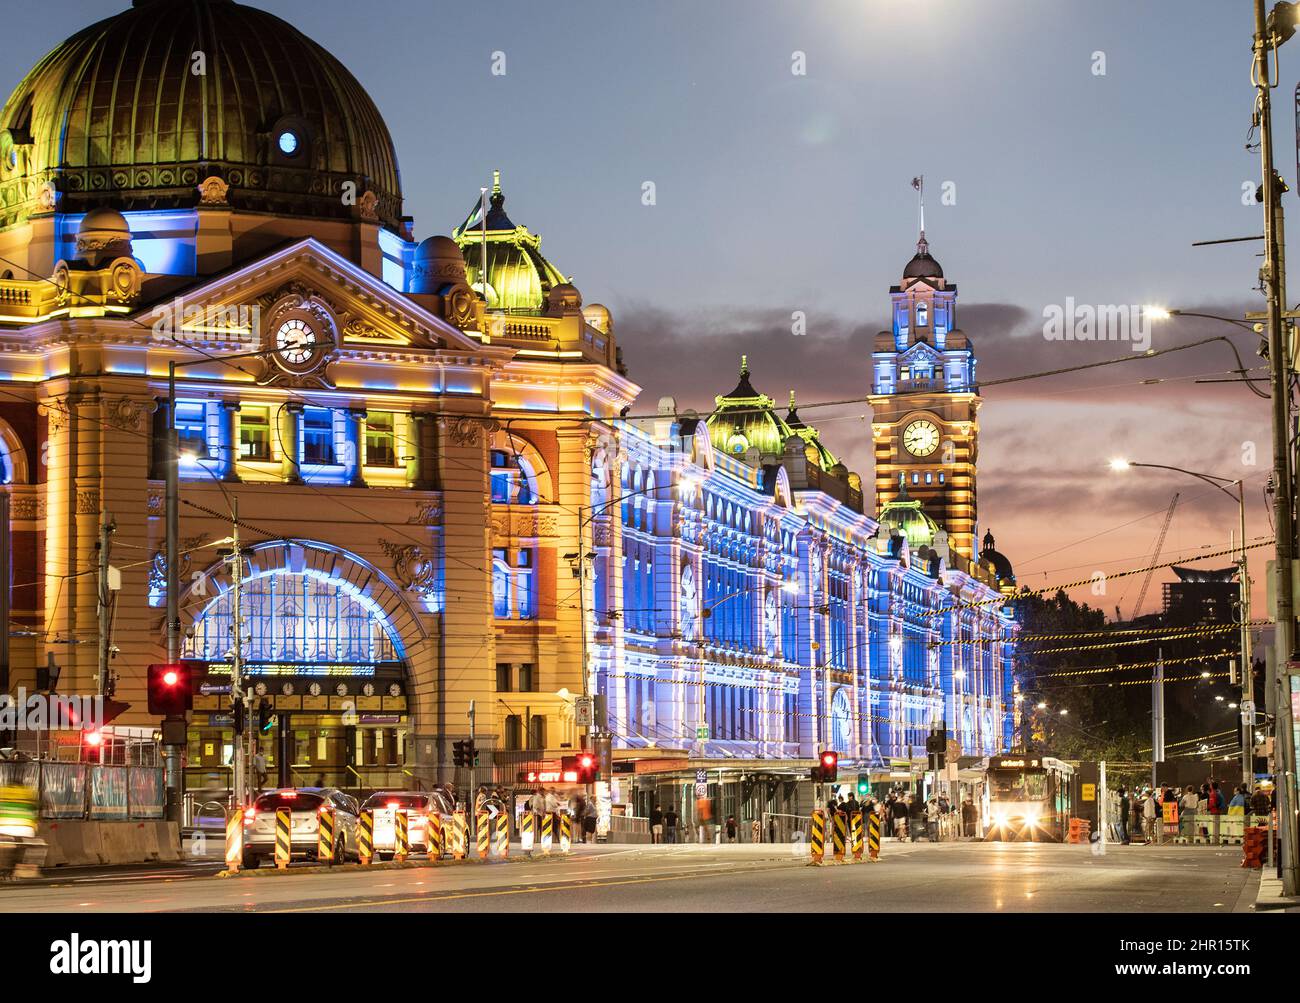 Melbourne, Australia. Melbourne Landmark Flinders Street Railway Station illuminata di notte nei colori dell'Ucraina come segno di solidarietà. Foto Stock